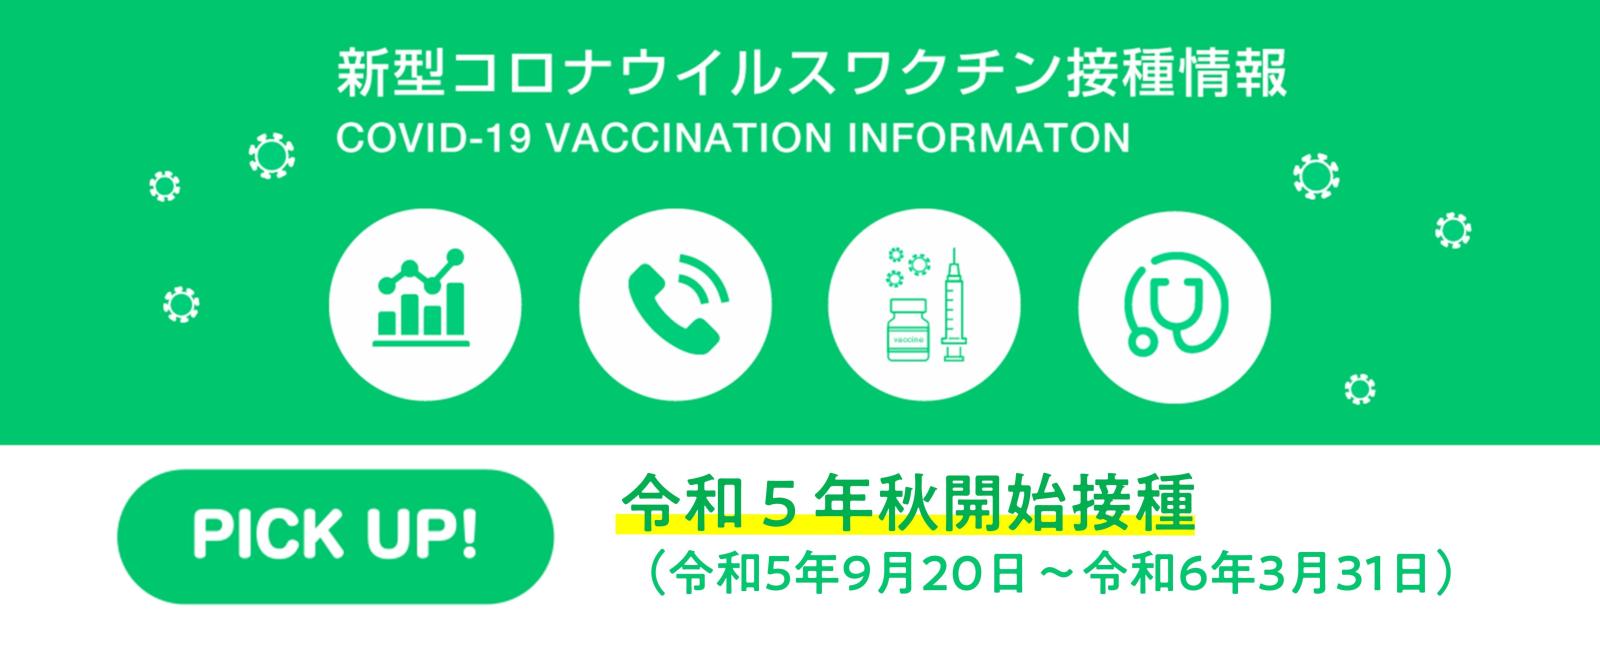 新型コロナウイルスワクチン接種情報